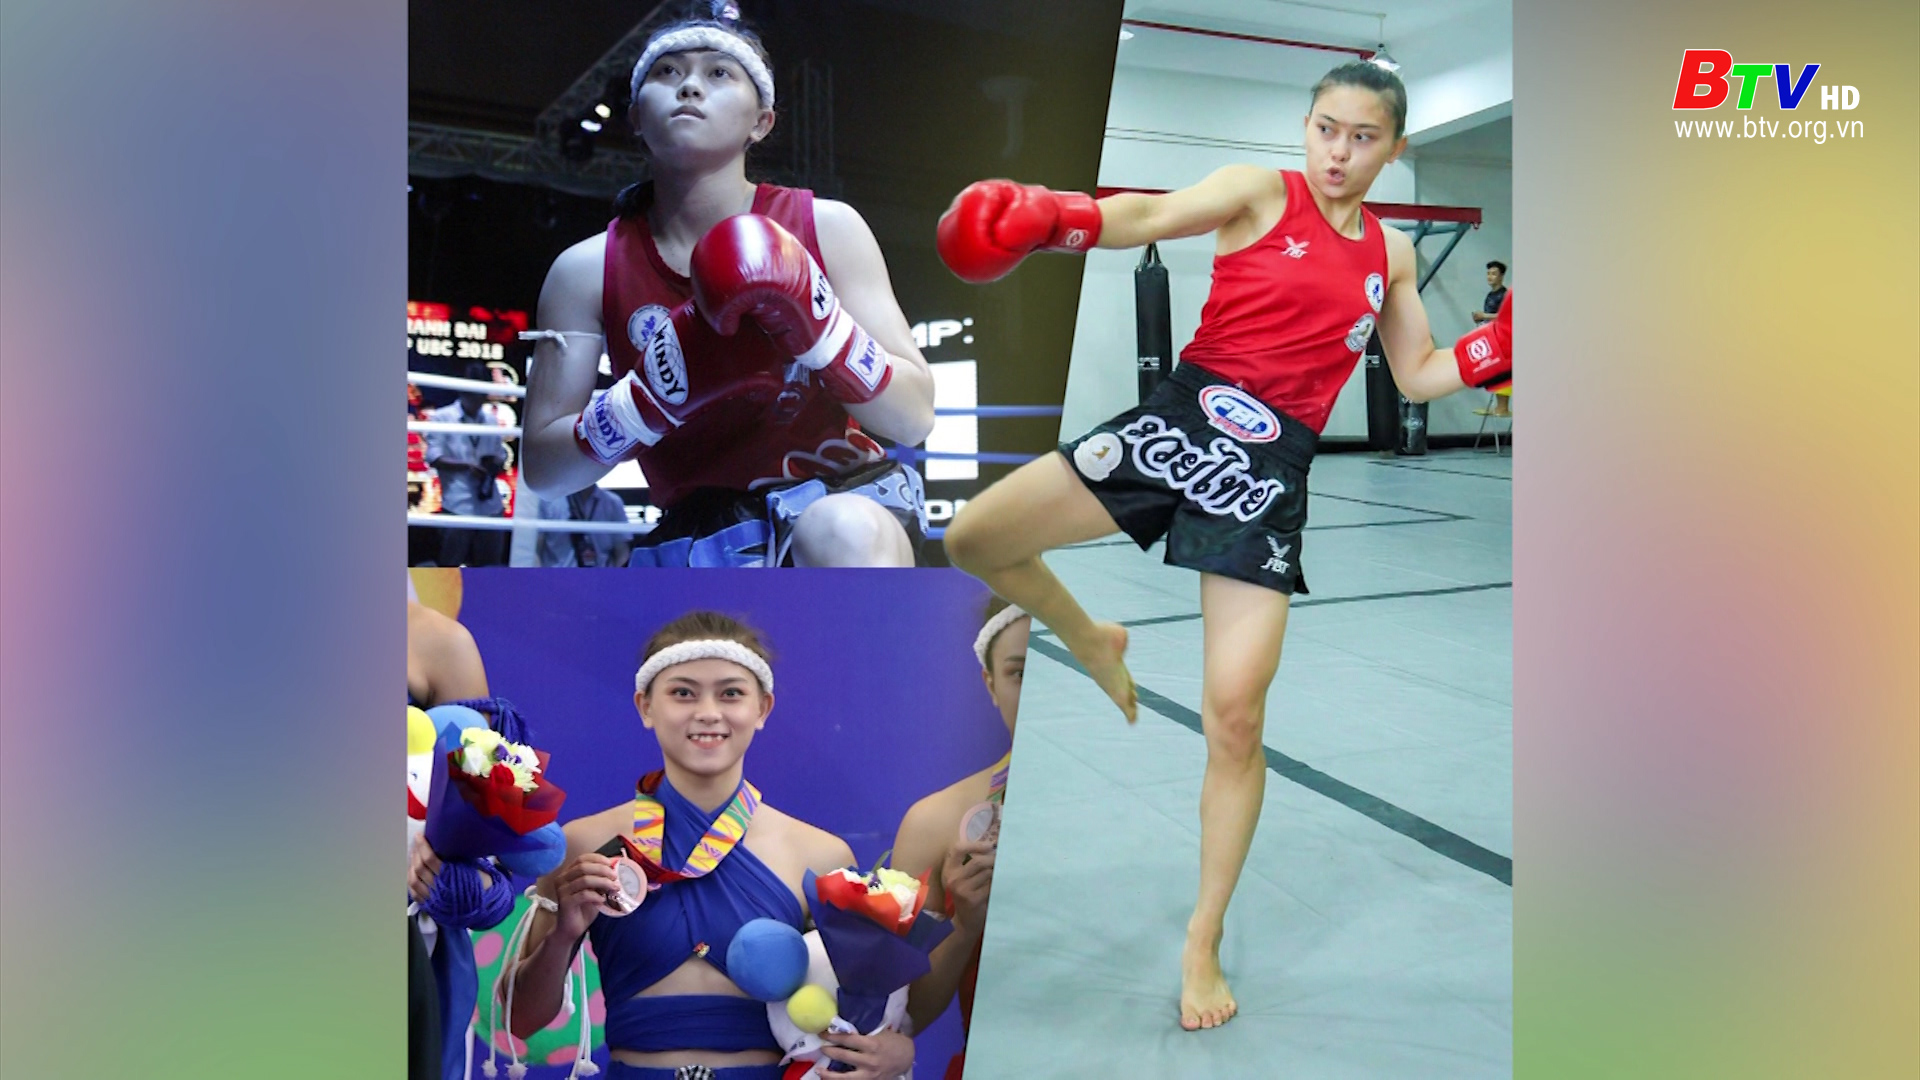 Nữ võ sĩ Huỳnh Hà Hữu Hiếu đứng số 1 bảng xếp hạng Muay WBC thế giới 